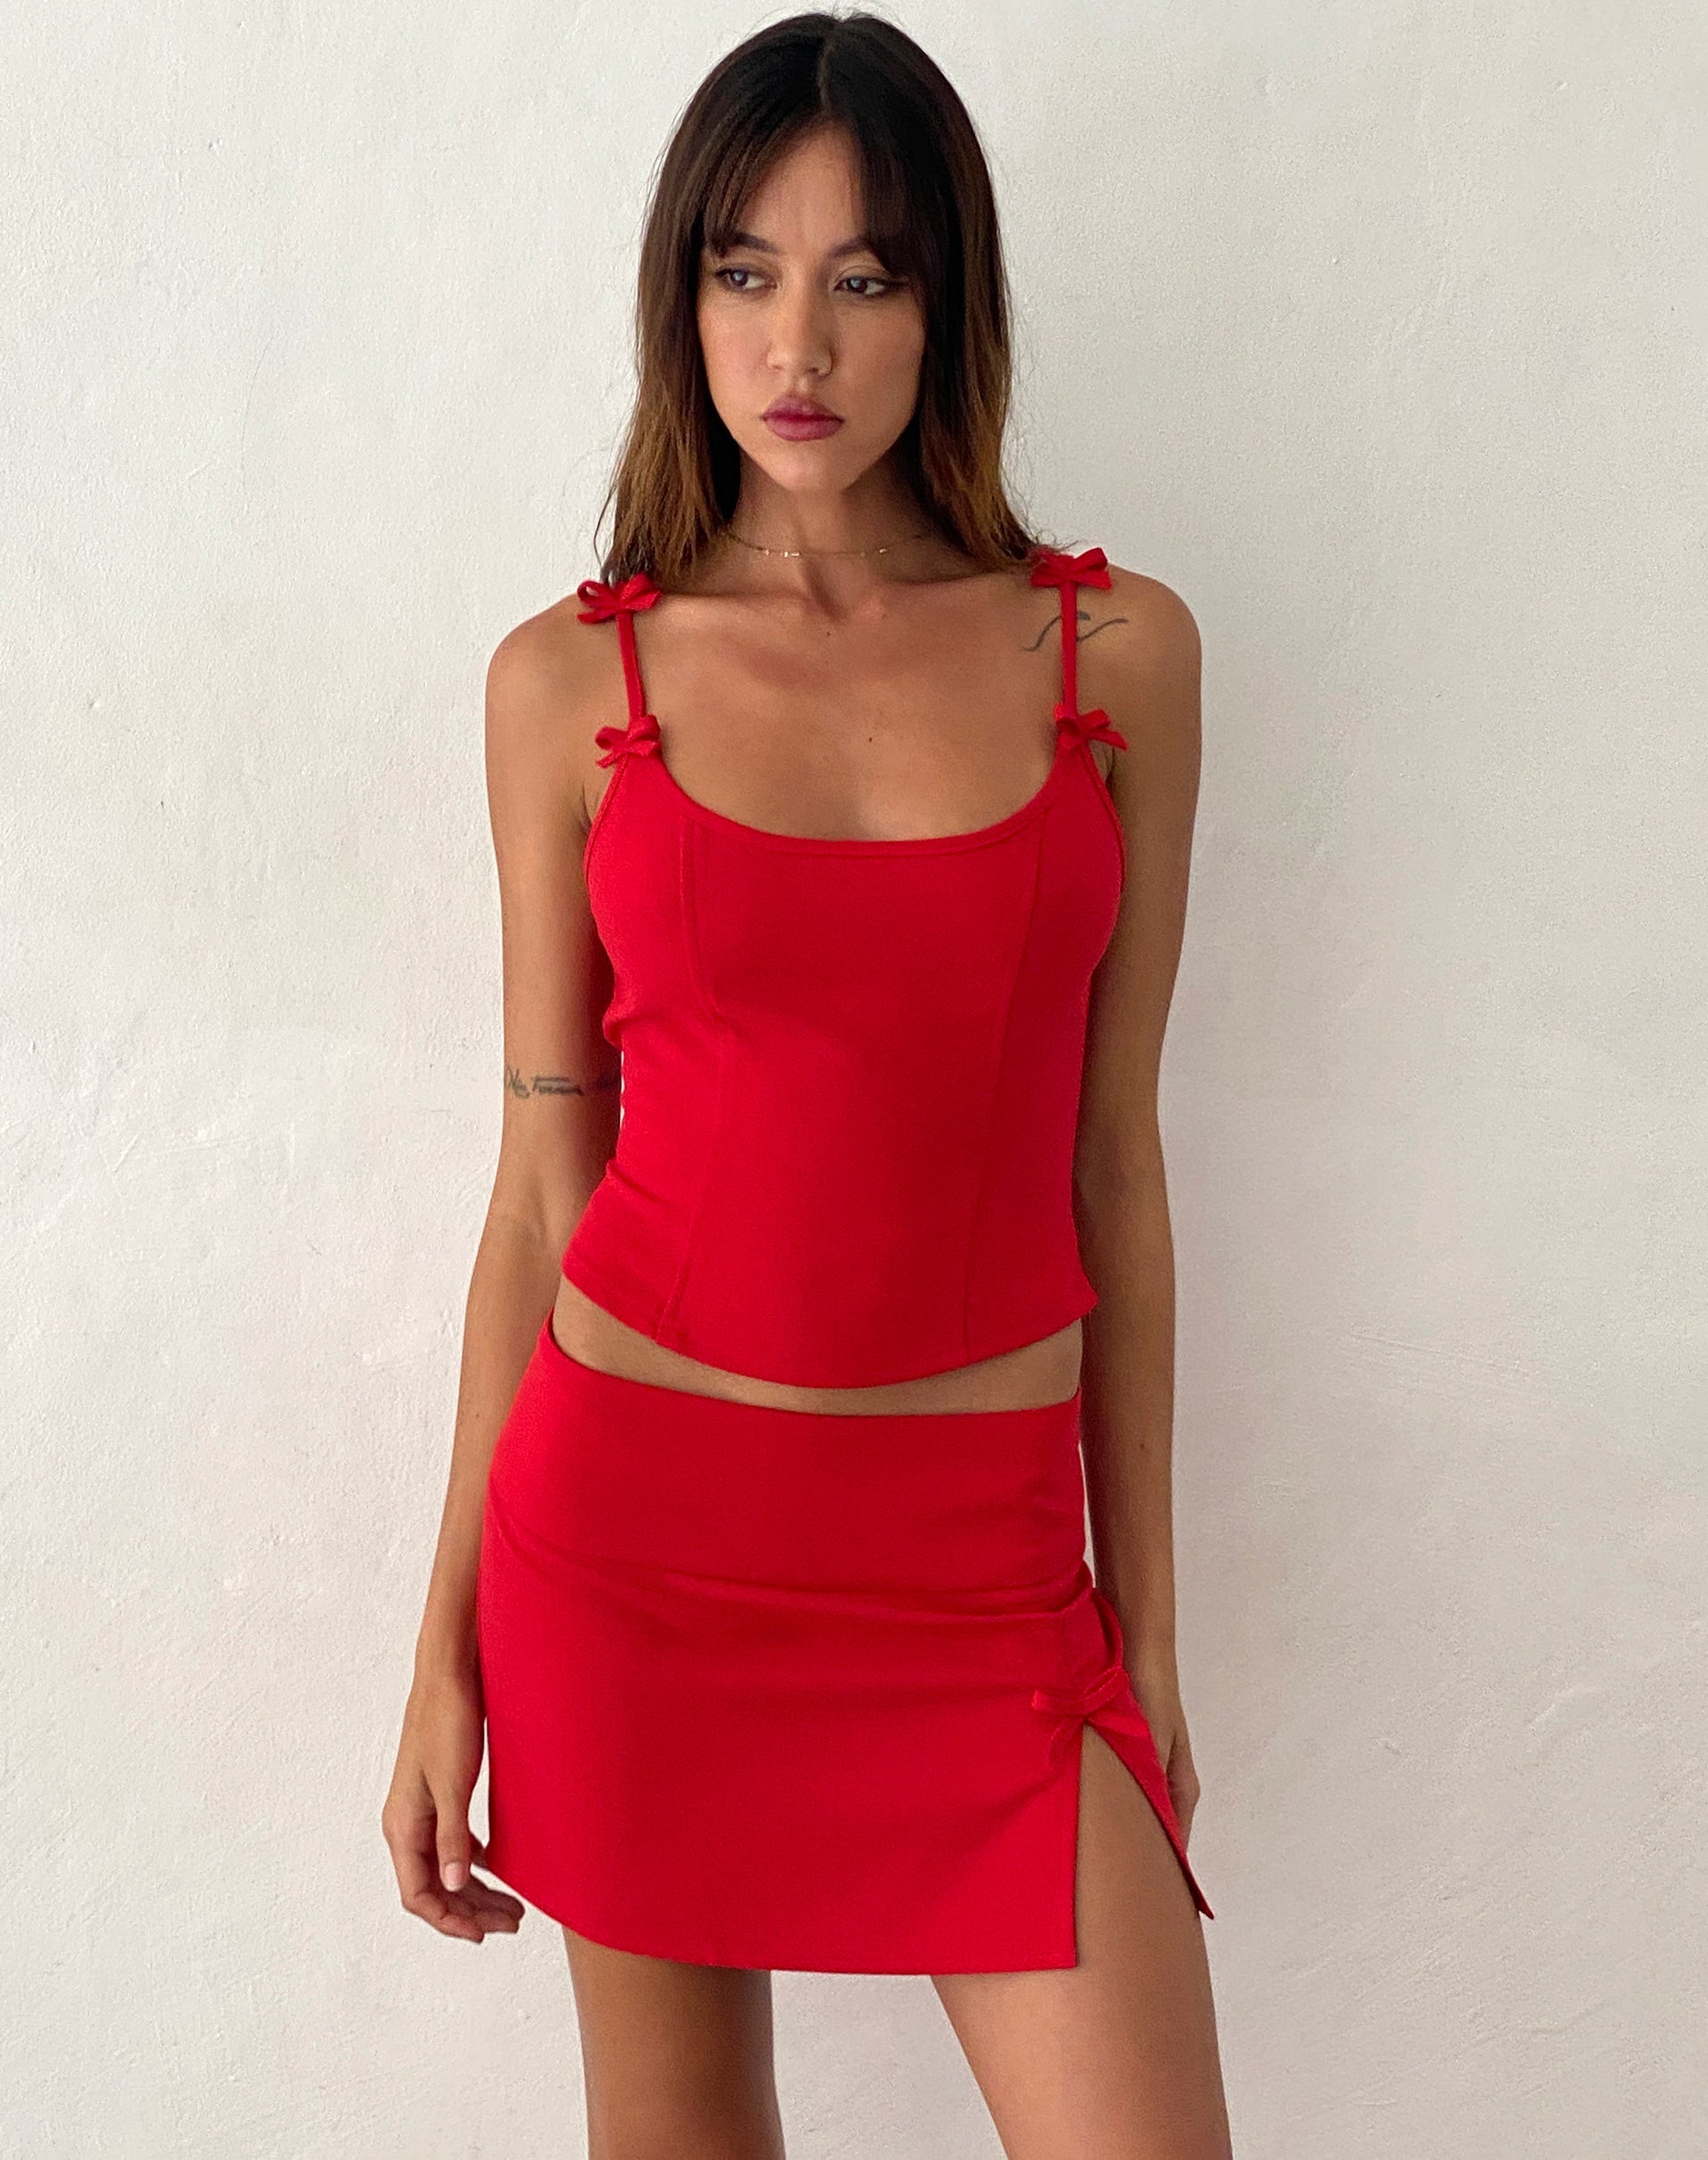 Imagen de Yanti Minifalda roja con lazos rojos